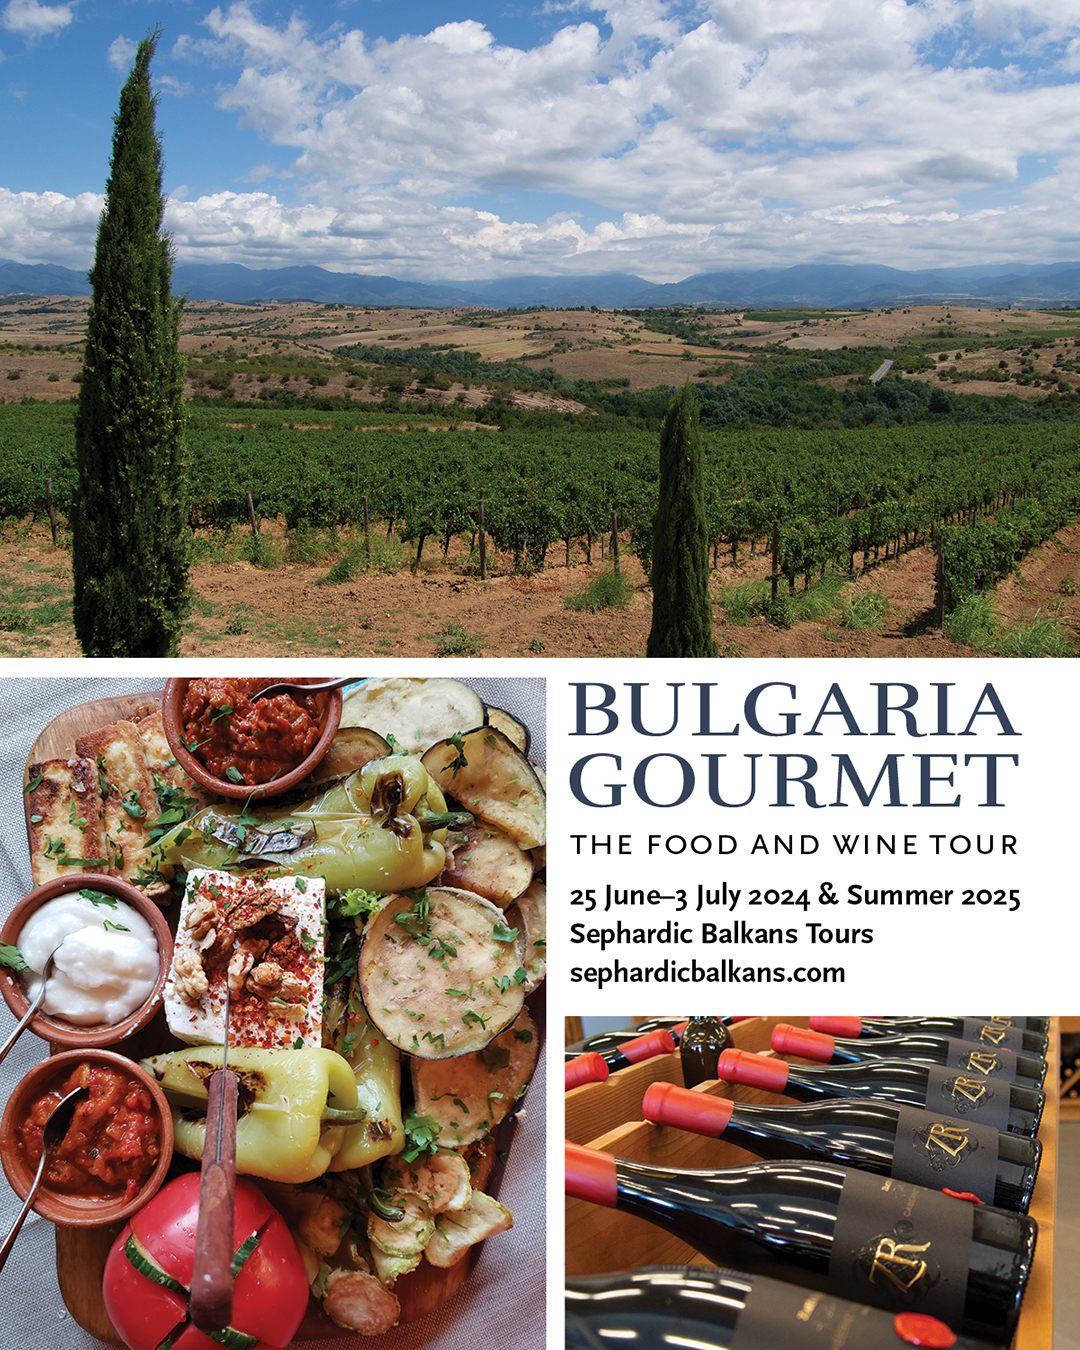 Santé Magazine Features Bulgaria Gourmet Food & Wine Tour  